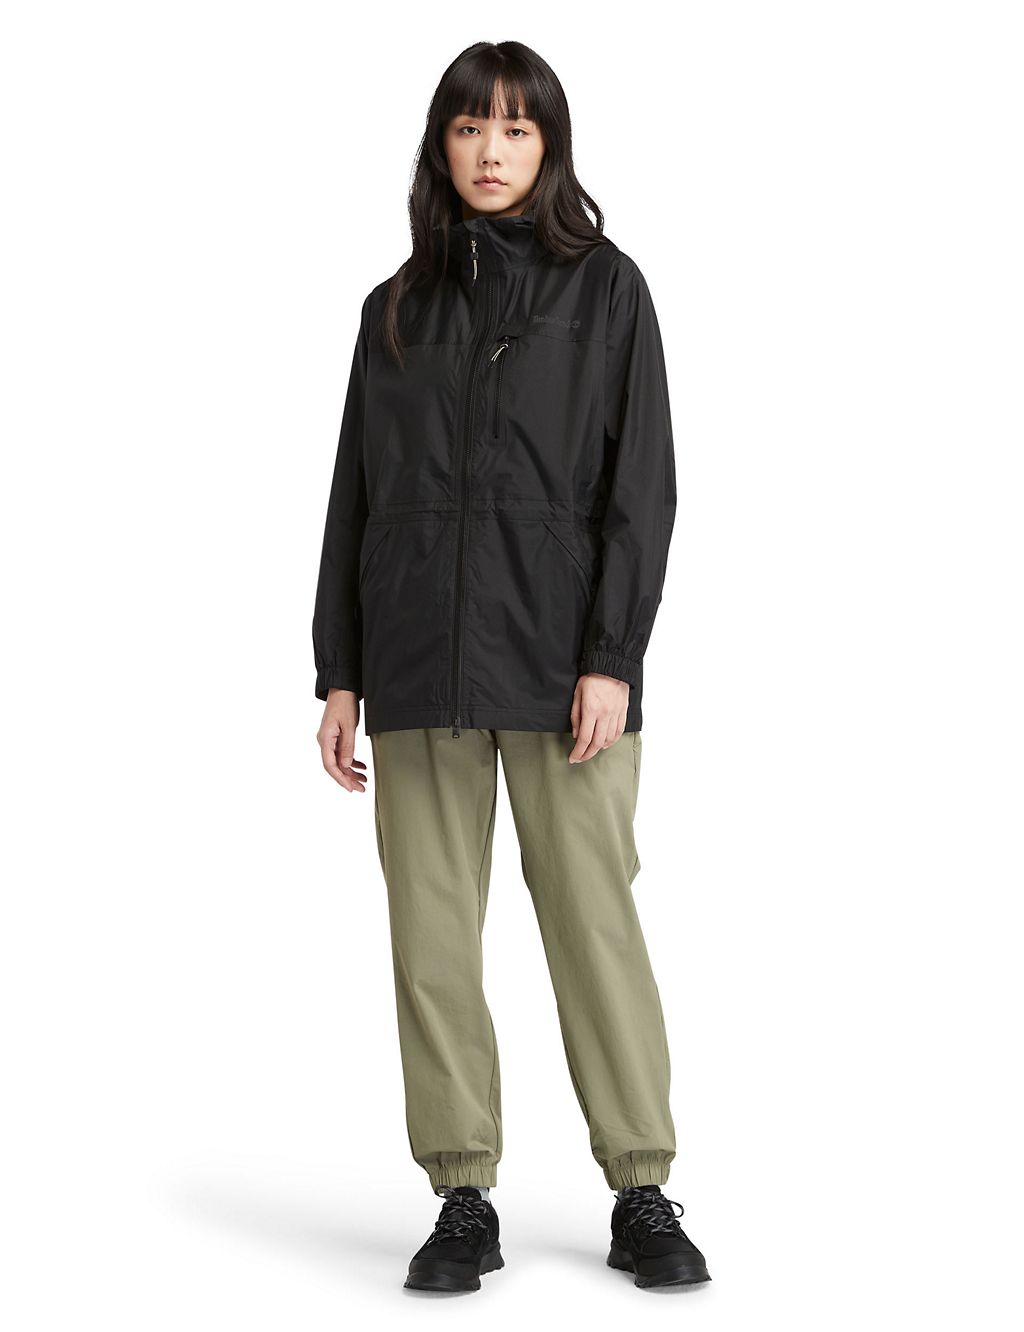 Jenness Waterproof Hooded Packaway Rain Jacket 1 of 5